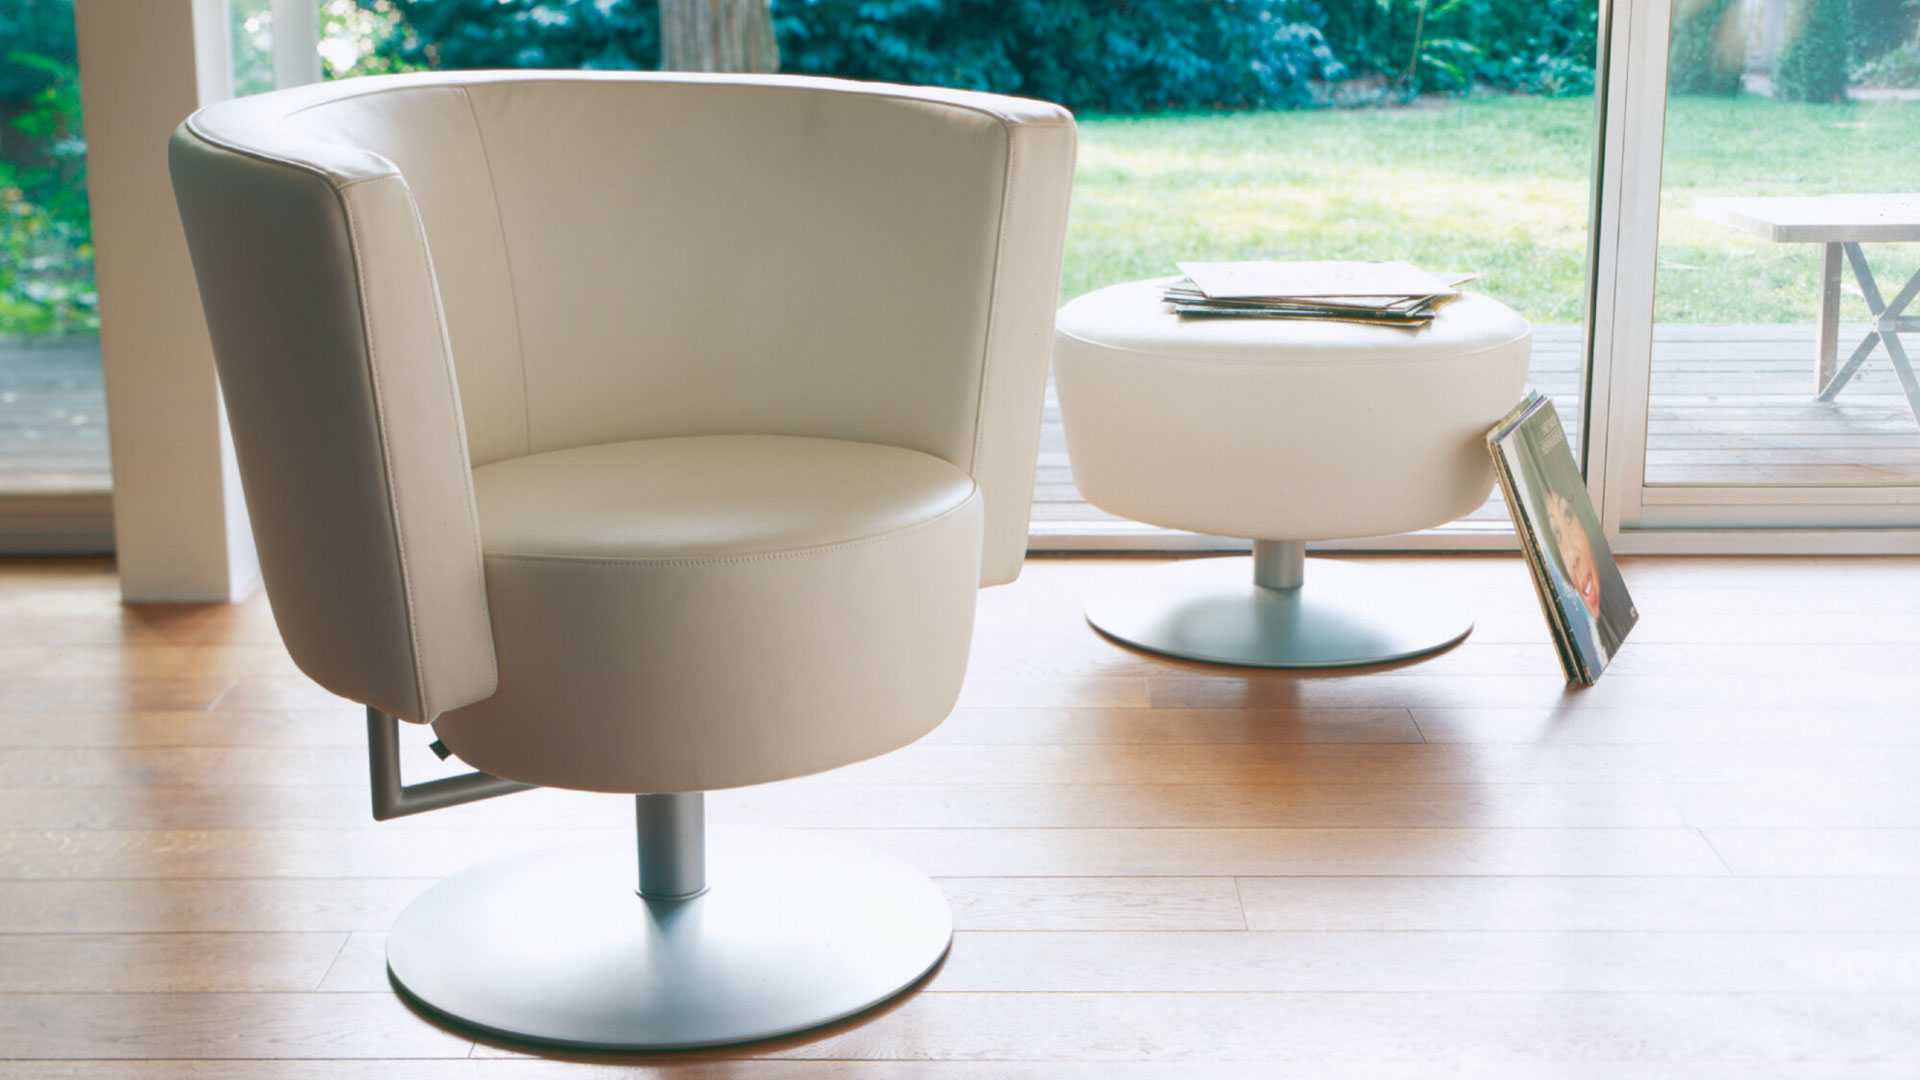 Офисные стулья – характеристики, виды, стоимость и модели. 115 фото лучших стульев для офиса